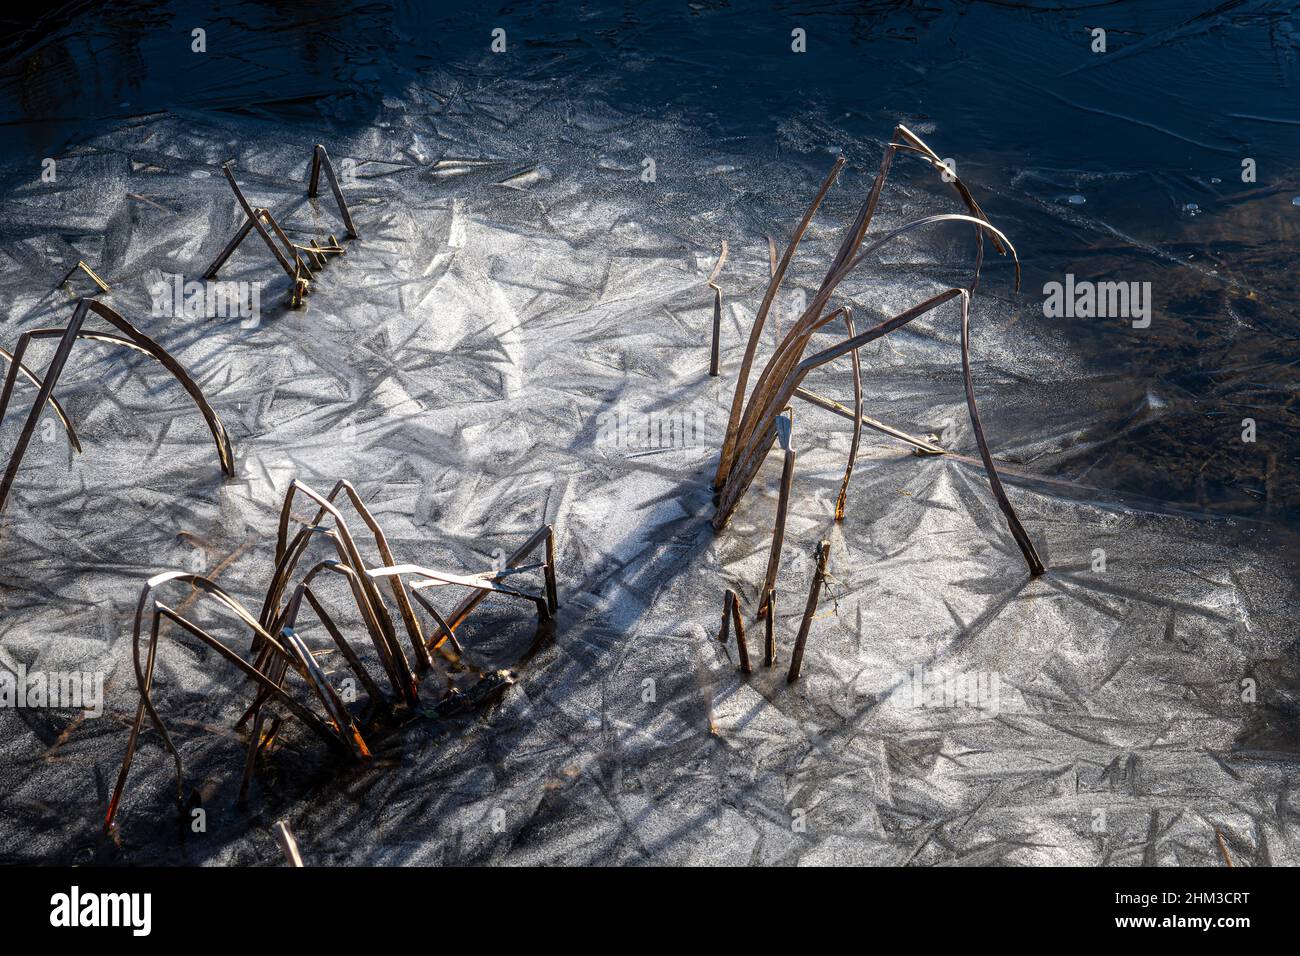 Piante acquatiche secche intrappolate nel ghiaccio invernale. I primi raggi di un sole invernale scaldano la superficie ghiacciata. Pantano Zittola, montenero Valcocchiara, Molise Foto Stock